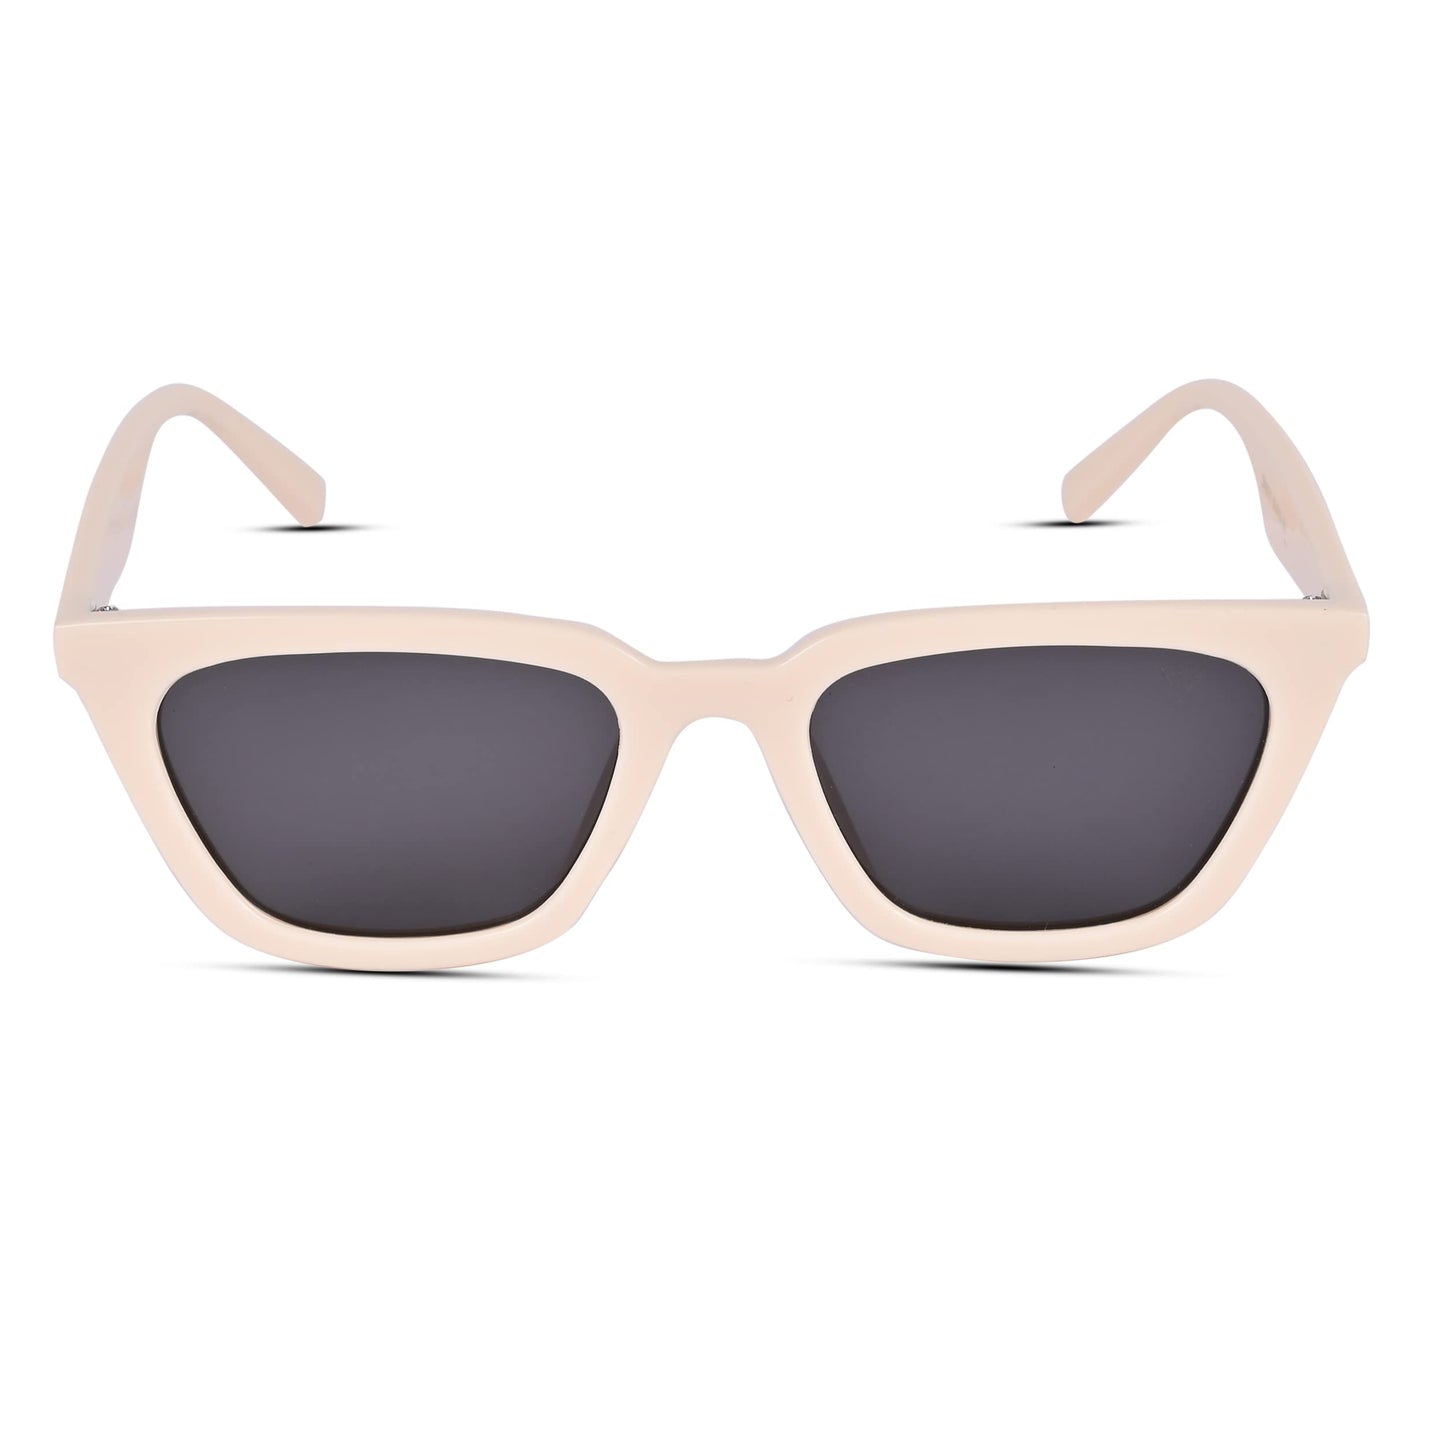 Voyage UV Protection Black Cat-Eye Sunglasses for Women (3517MG3762 | Beige Frame | Black Lens)